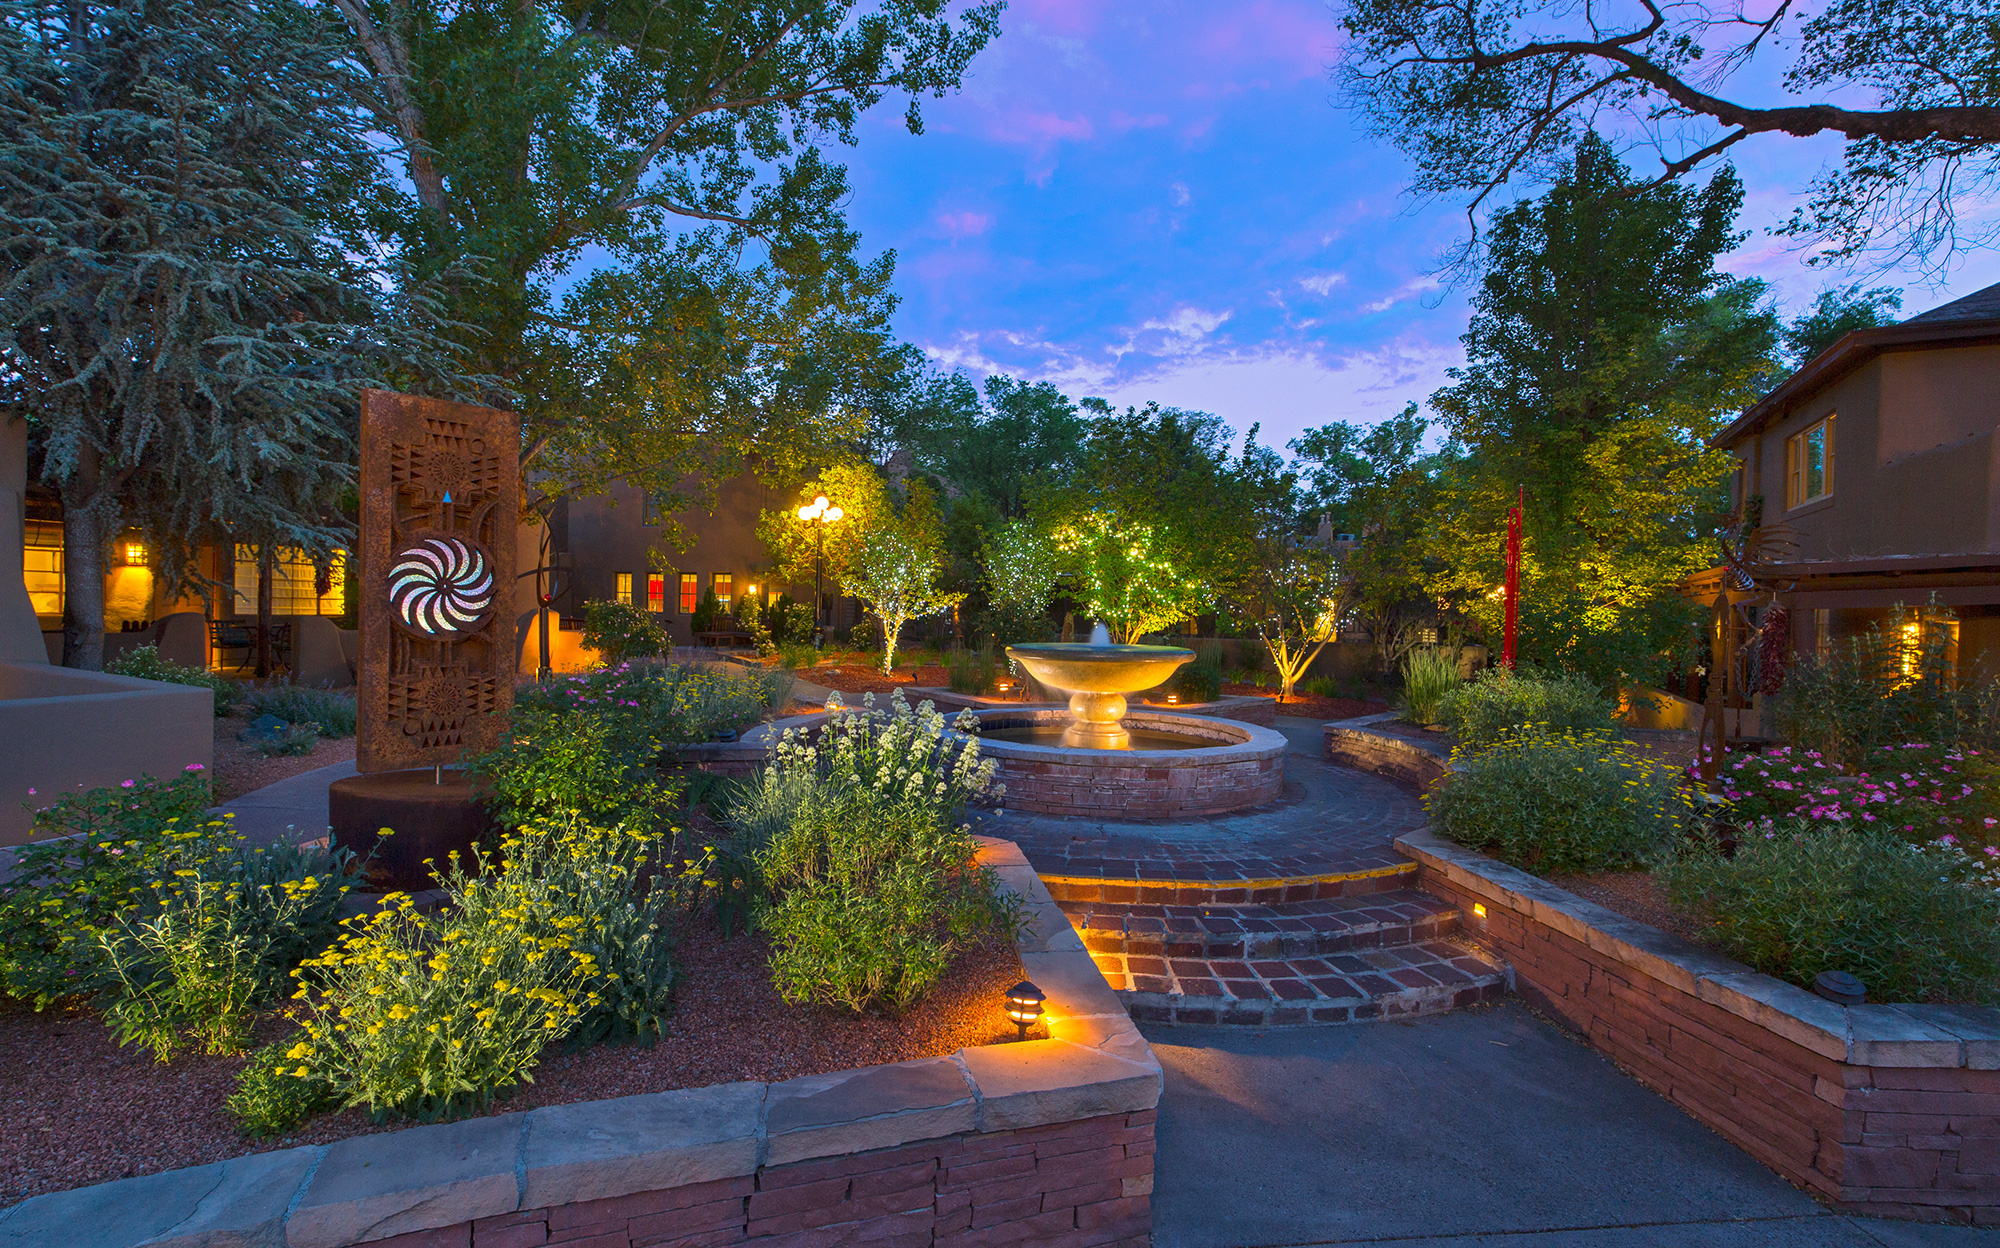 Luxury hotel, Resort in New Mexico, La Posada de Santa Fe, 2000x1250 HD Desktop